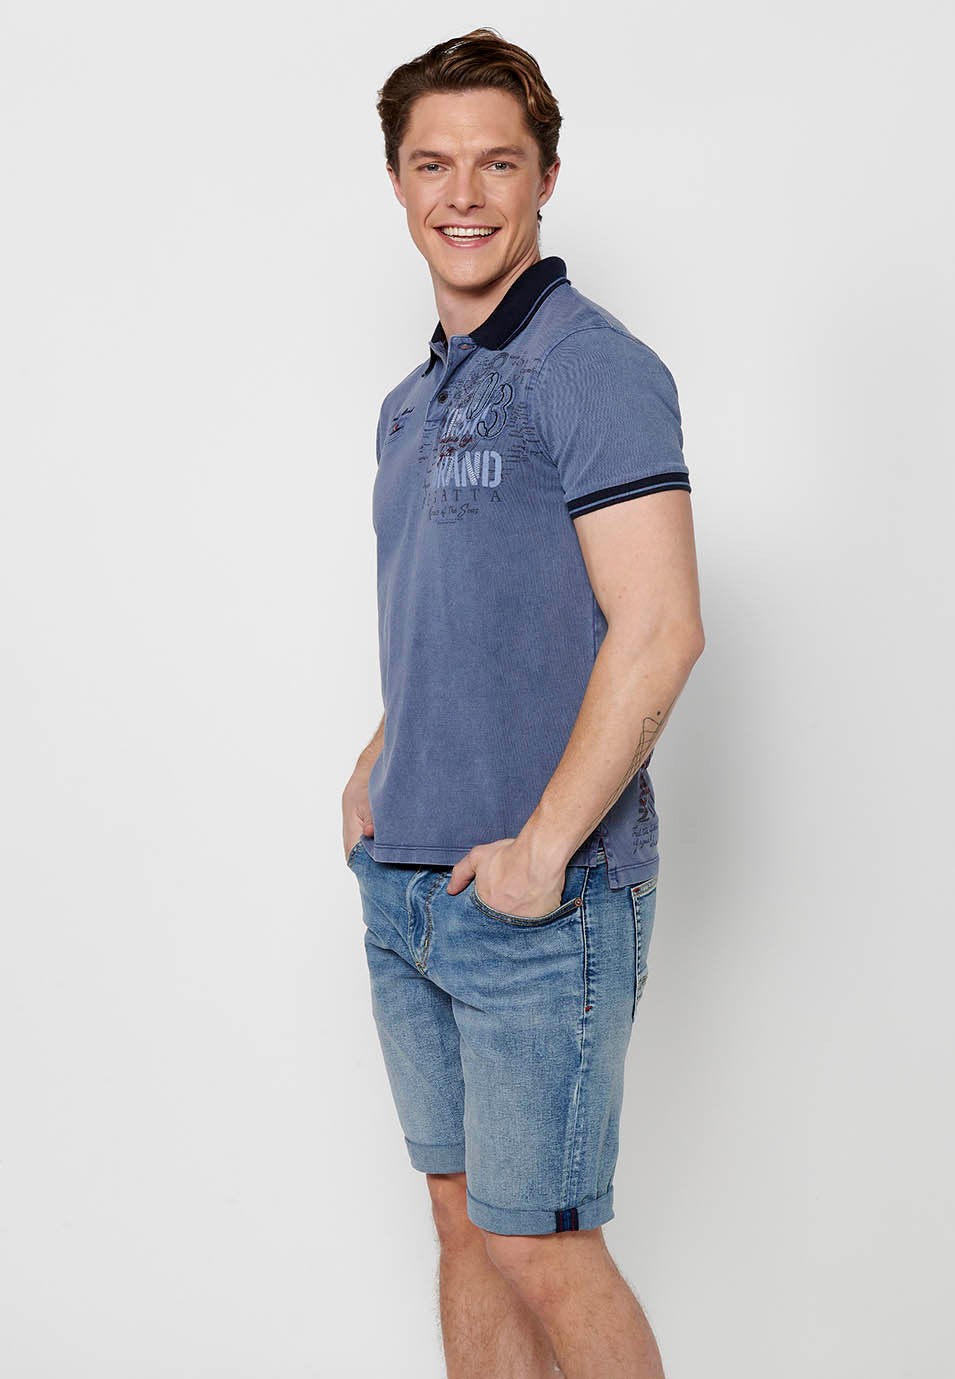 Polo manches courtes en coton, col chemise avec boutons, coloris bleu pour homme